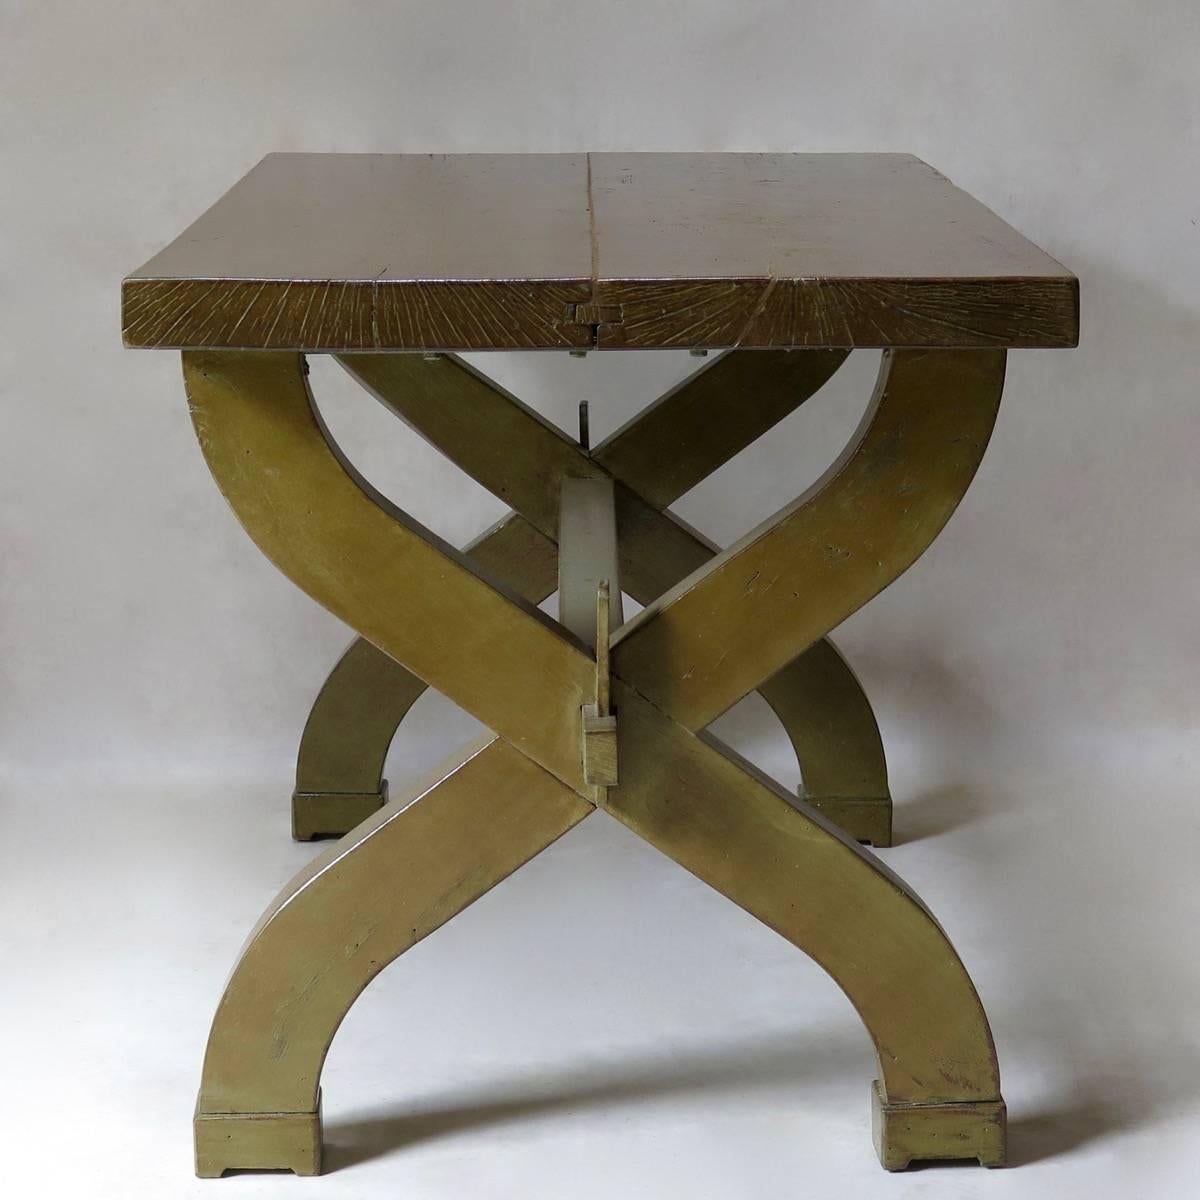 Französischer Art-Déco-Tisch mit klobigen Proportionen und einer dicken Platte, die auf einem geschweiften Sockel steht, der durch eine Bahre verbunden ist. Lackierte Oberfläche.